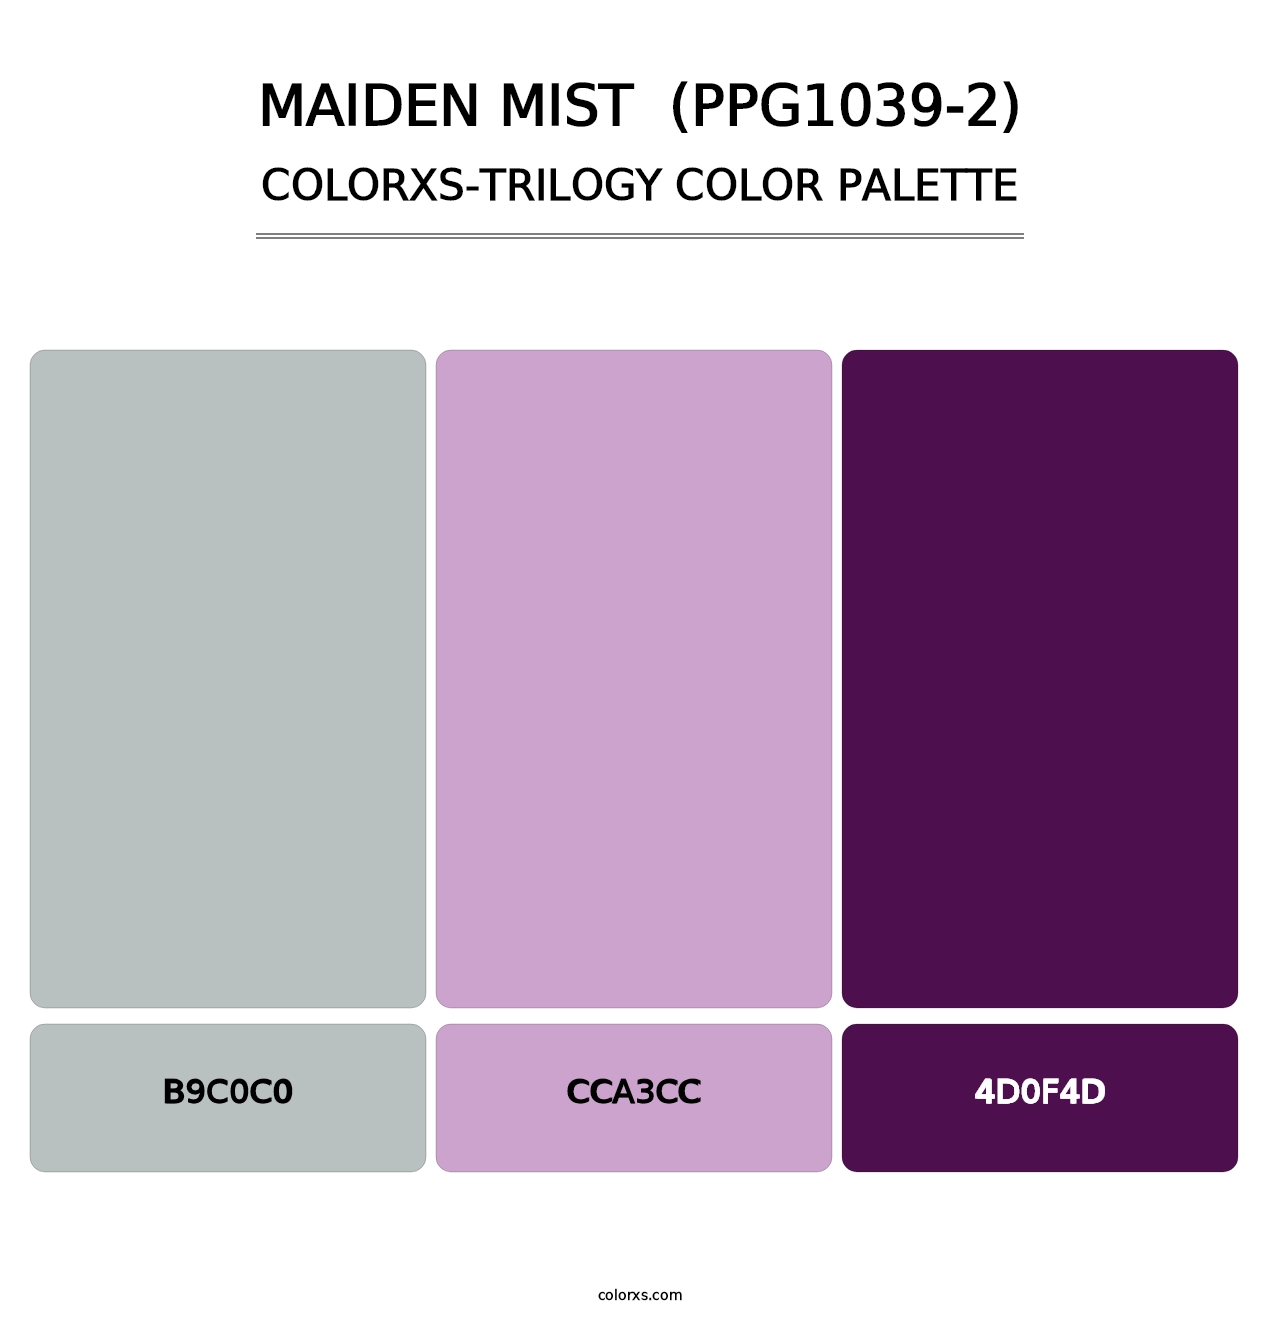 Maiden Mist  (PPG1039-2) - Colorxs Trilogy Palette